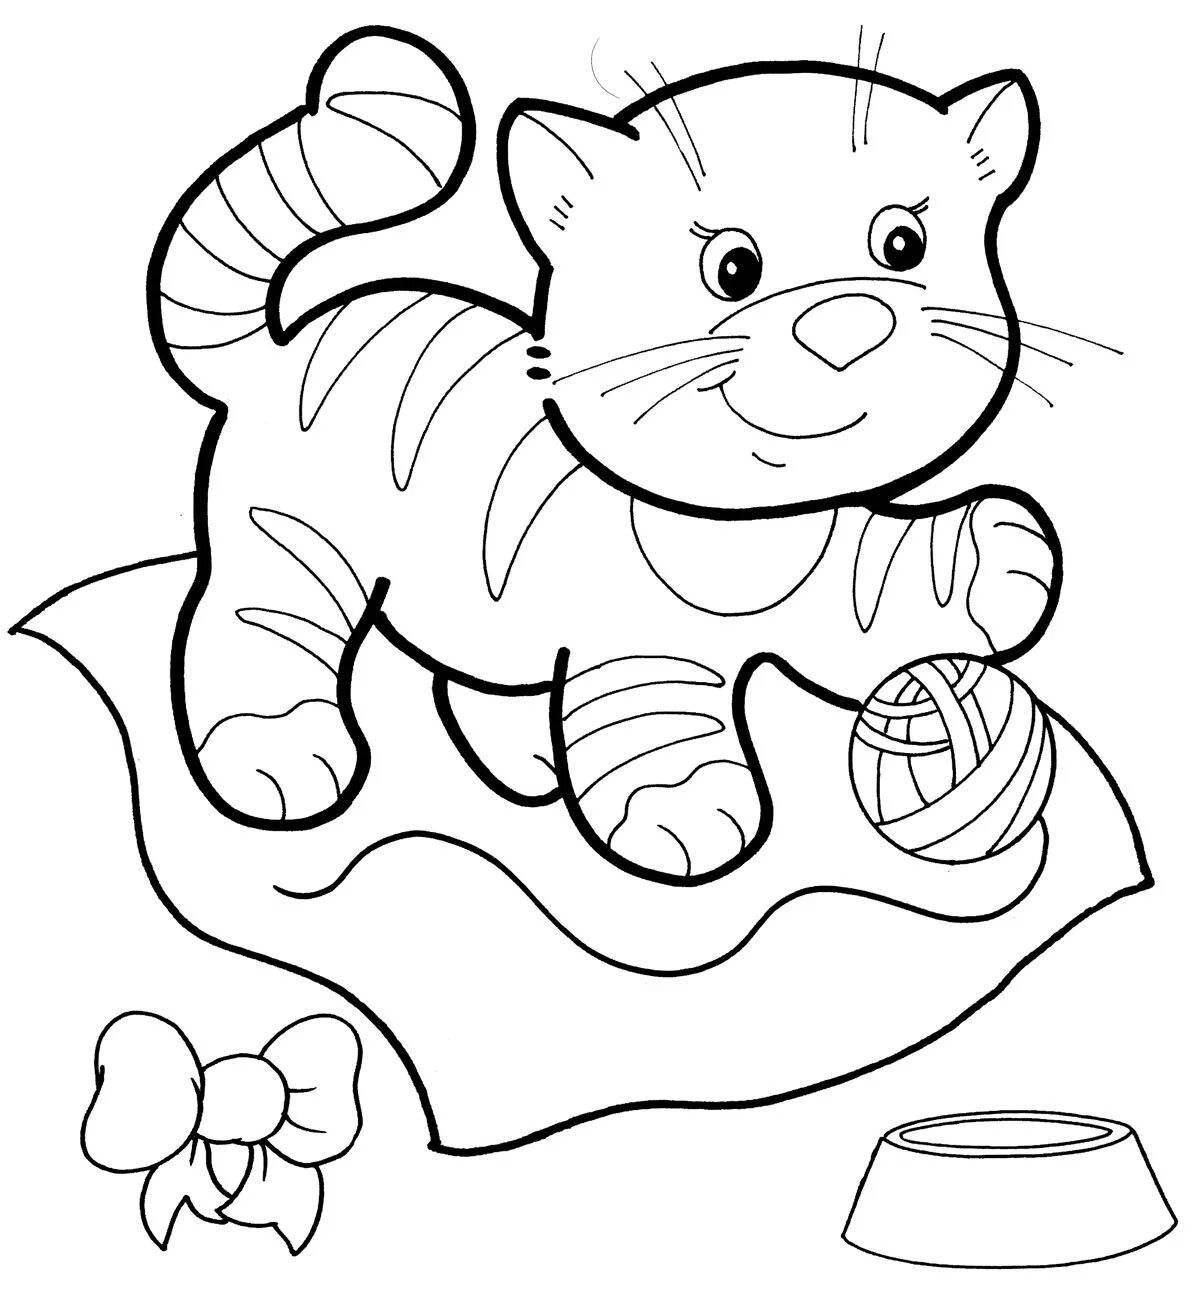 Snuggable coloring page детские котята